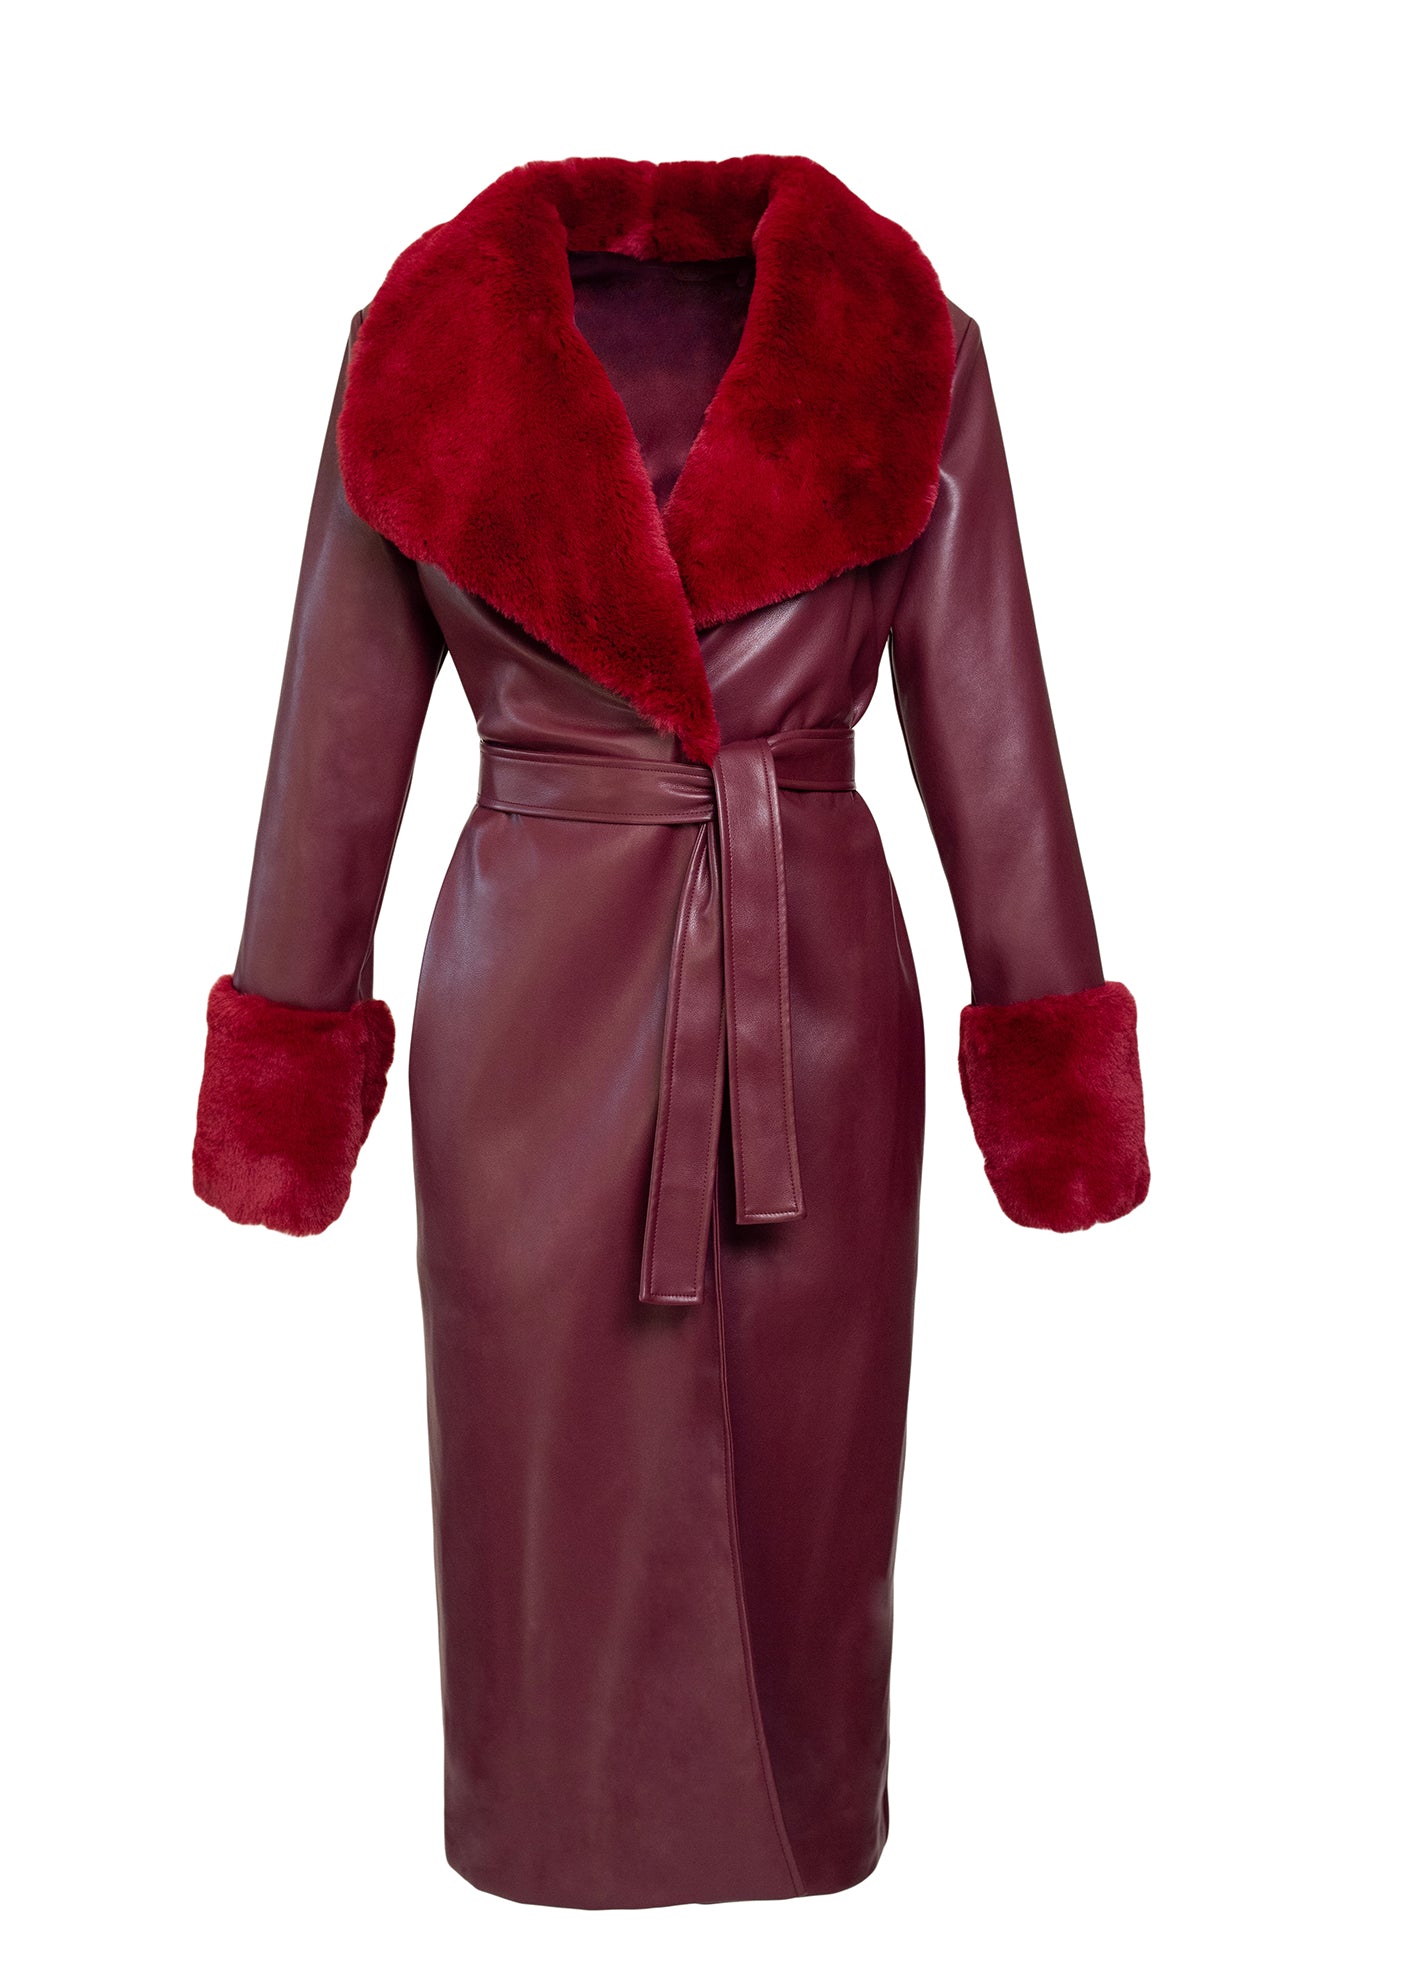 Burgundy 'Leather' & Faux Fur Wrap Coat